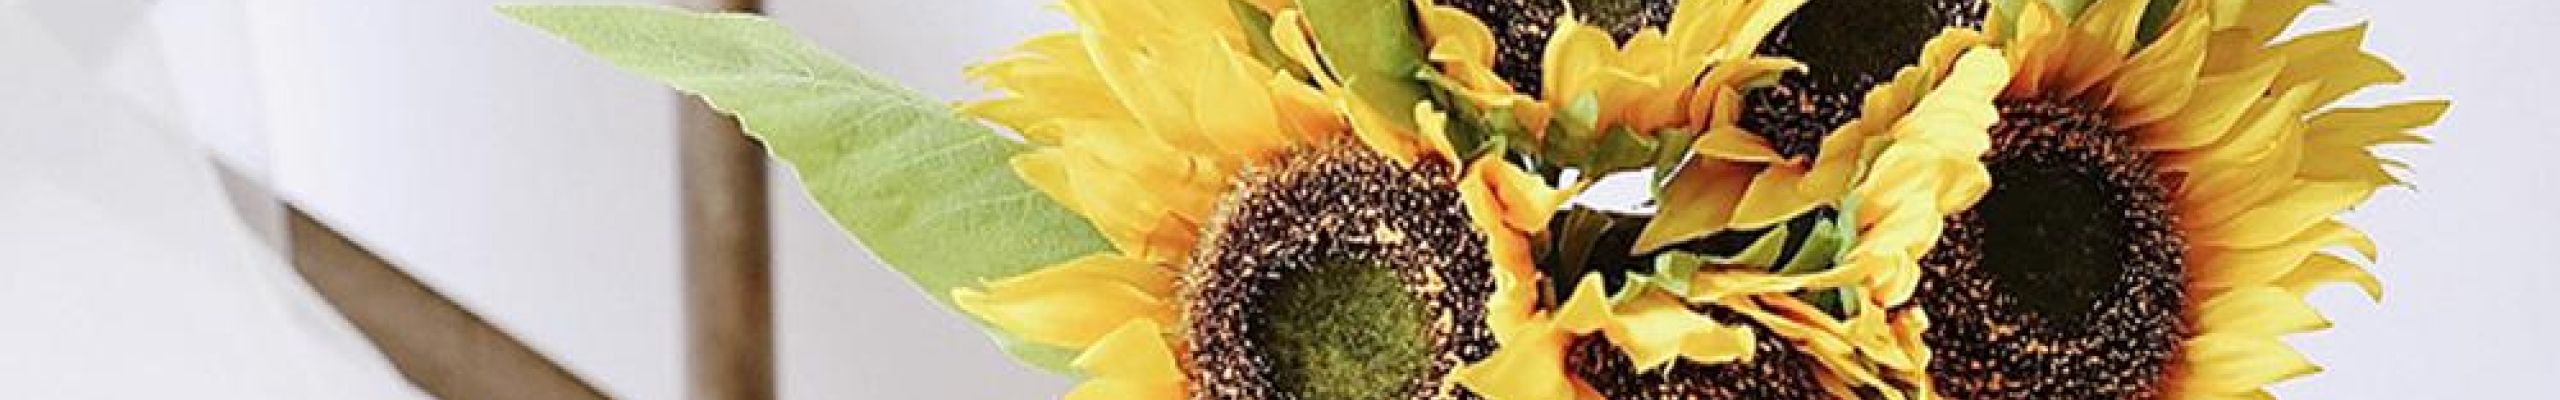 30 ιδέες για να διακοσμήσετε το σπίτι σας με καλοκαιρινά λουλούδια